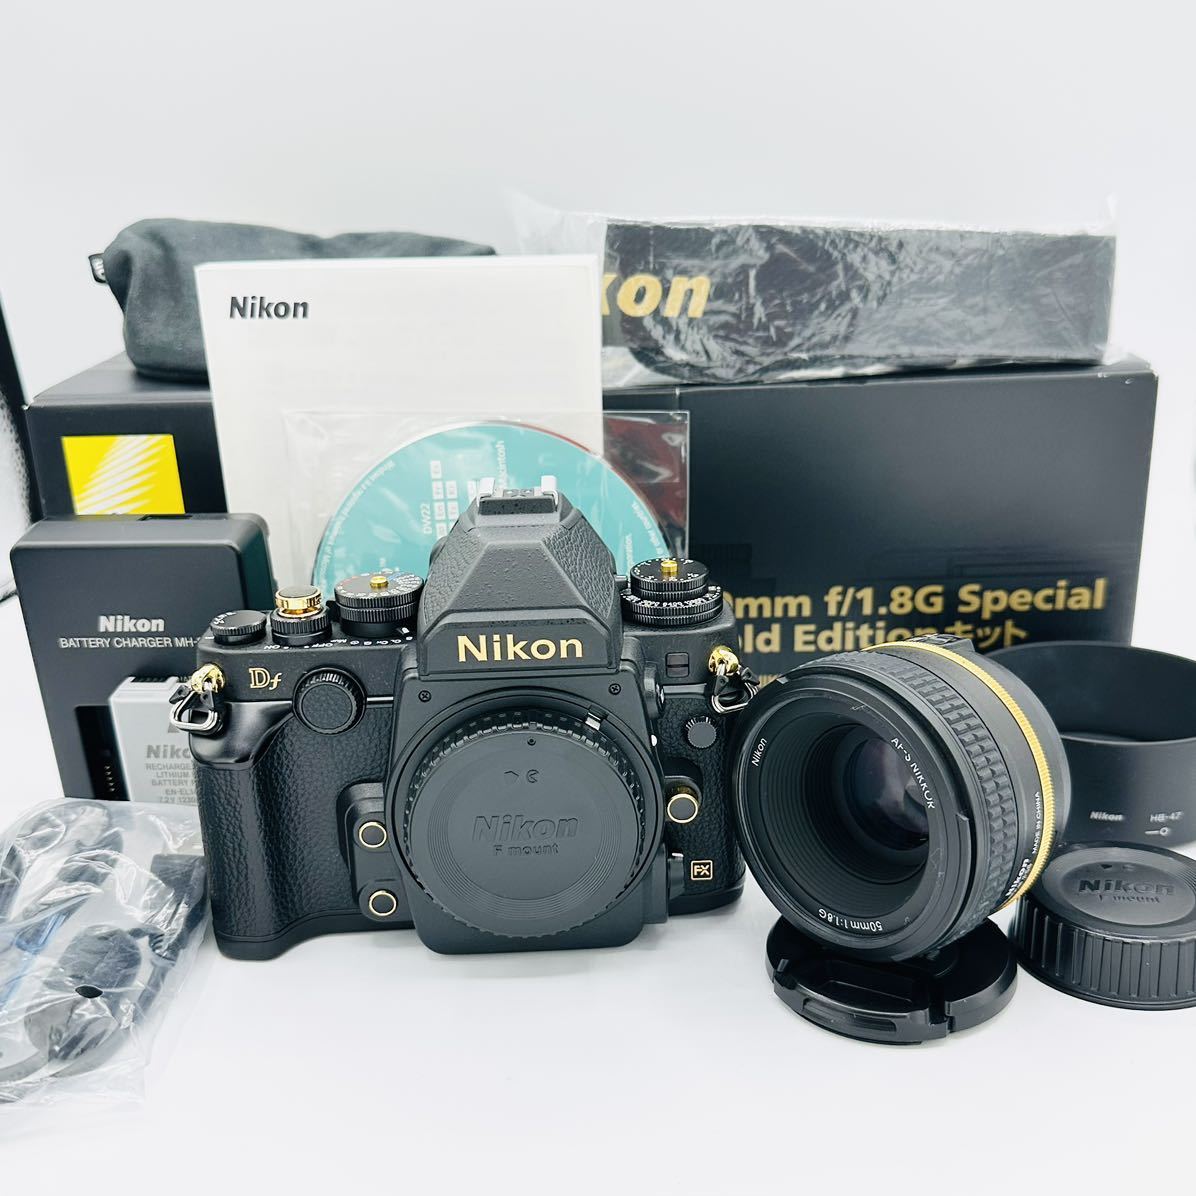 [ почти новый 4003 Schott редкость ]Nikon цифровой однообъективный зеркальный камера Df черный 50mm f/1.8G Special Gold Edition линзы комплект 